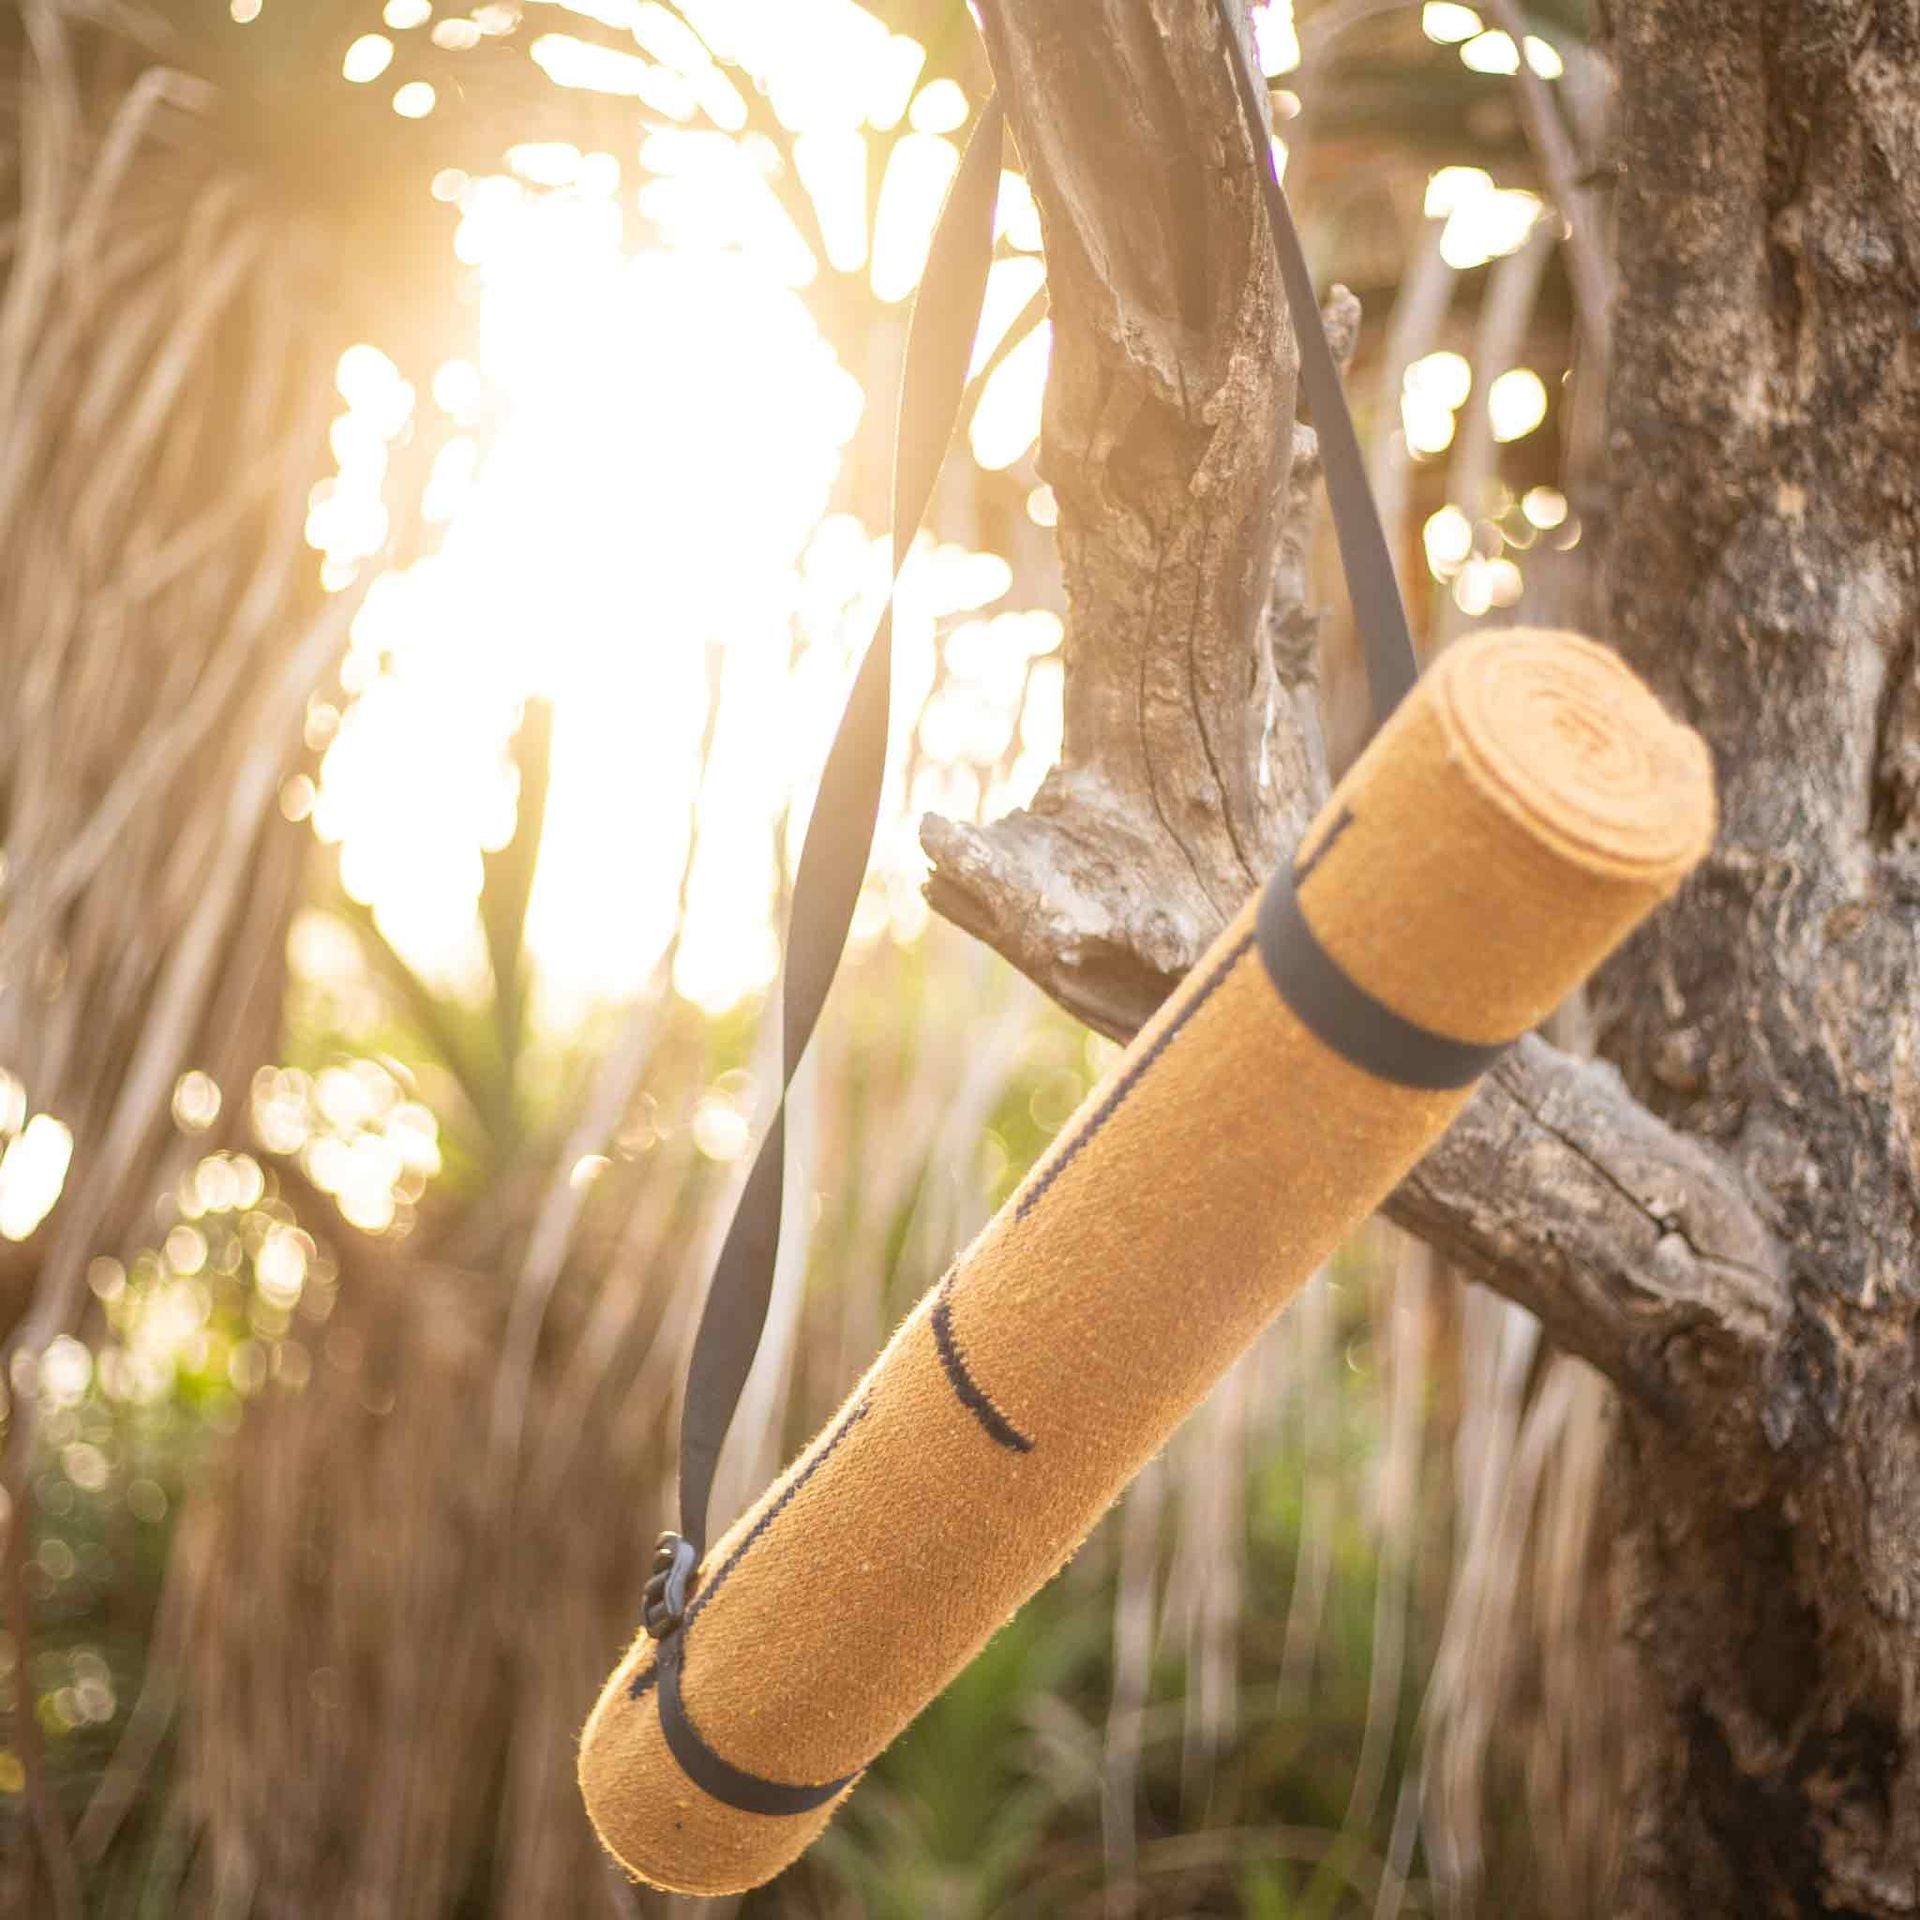 Yoga Mat Bamboo 4 mm Natural